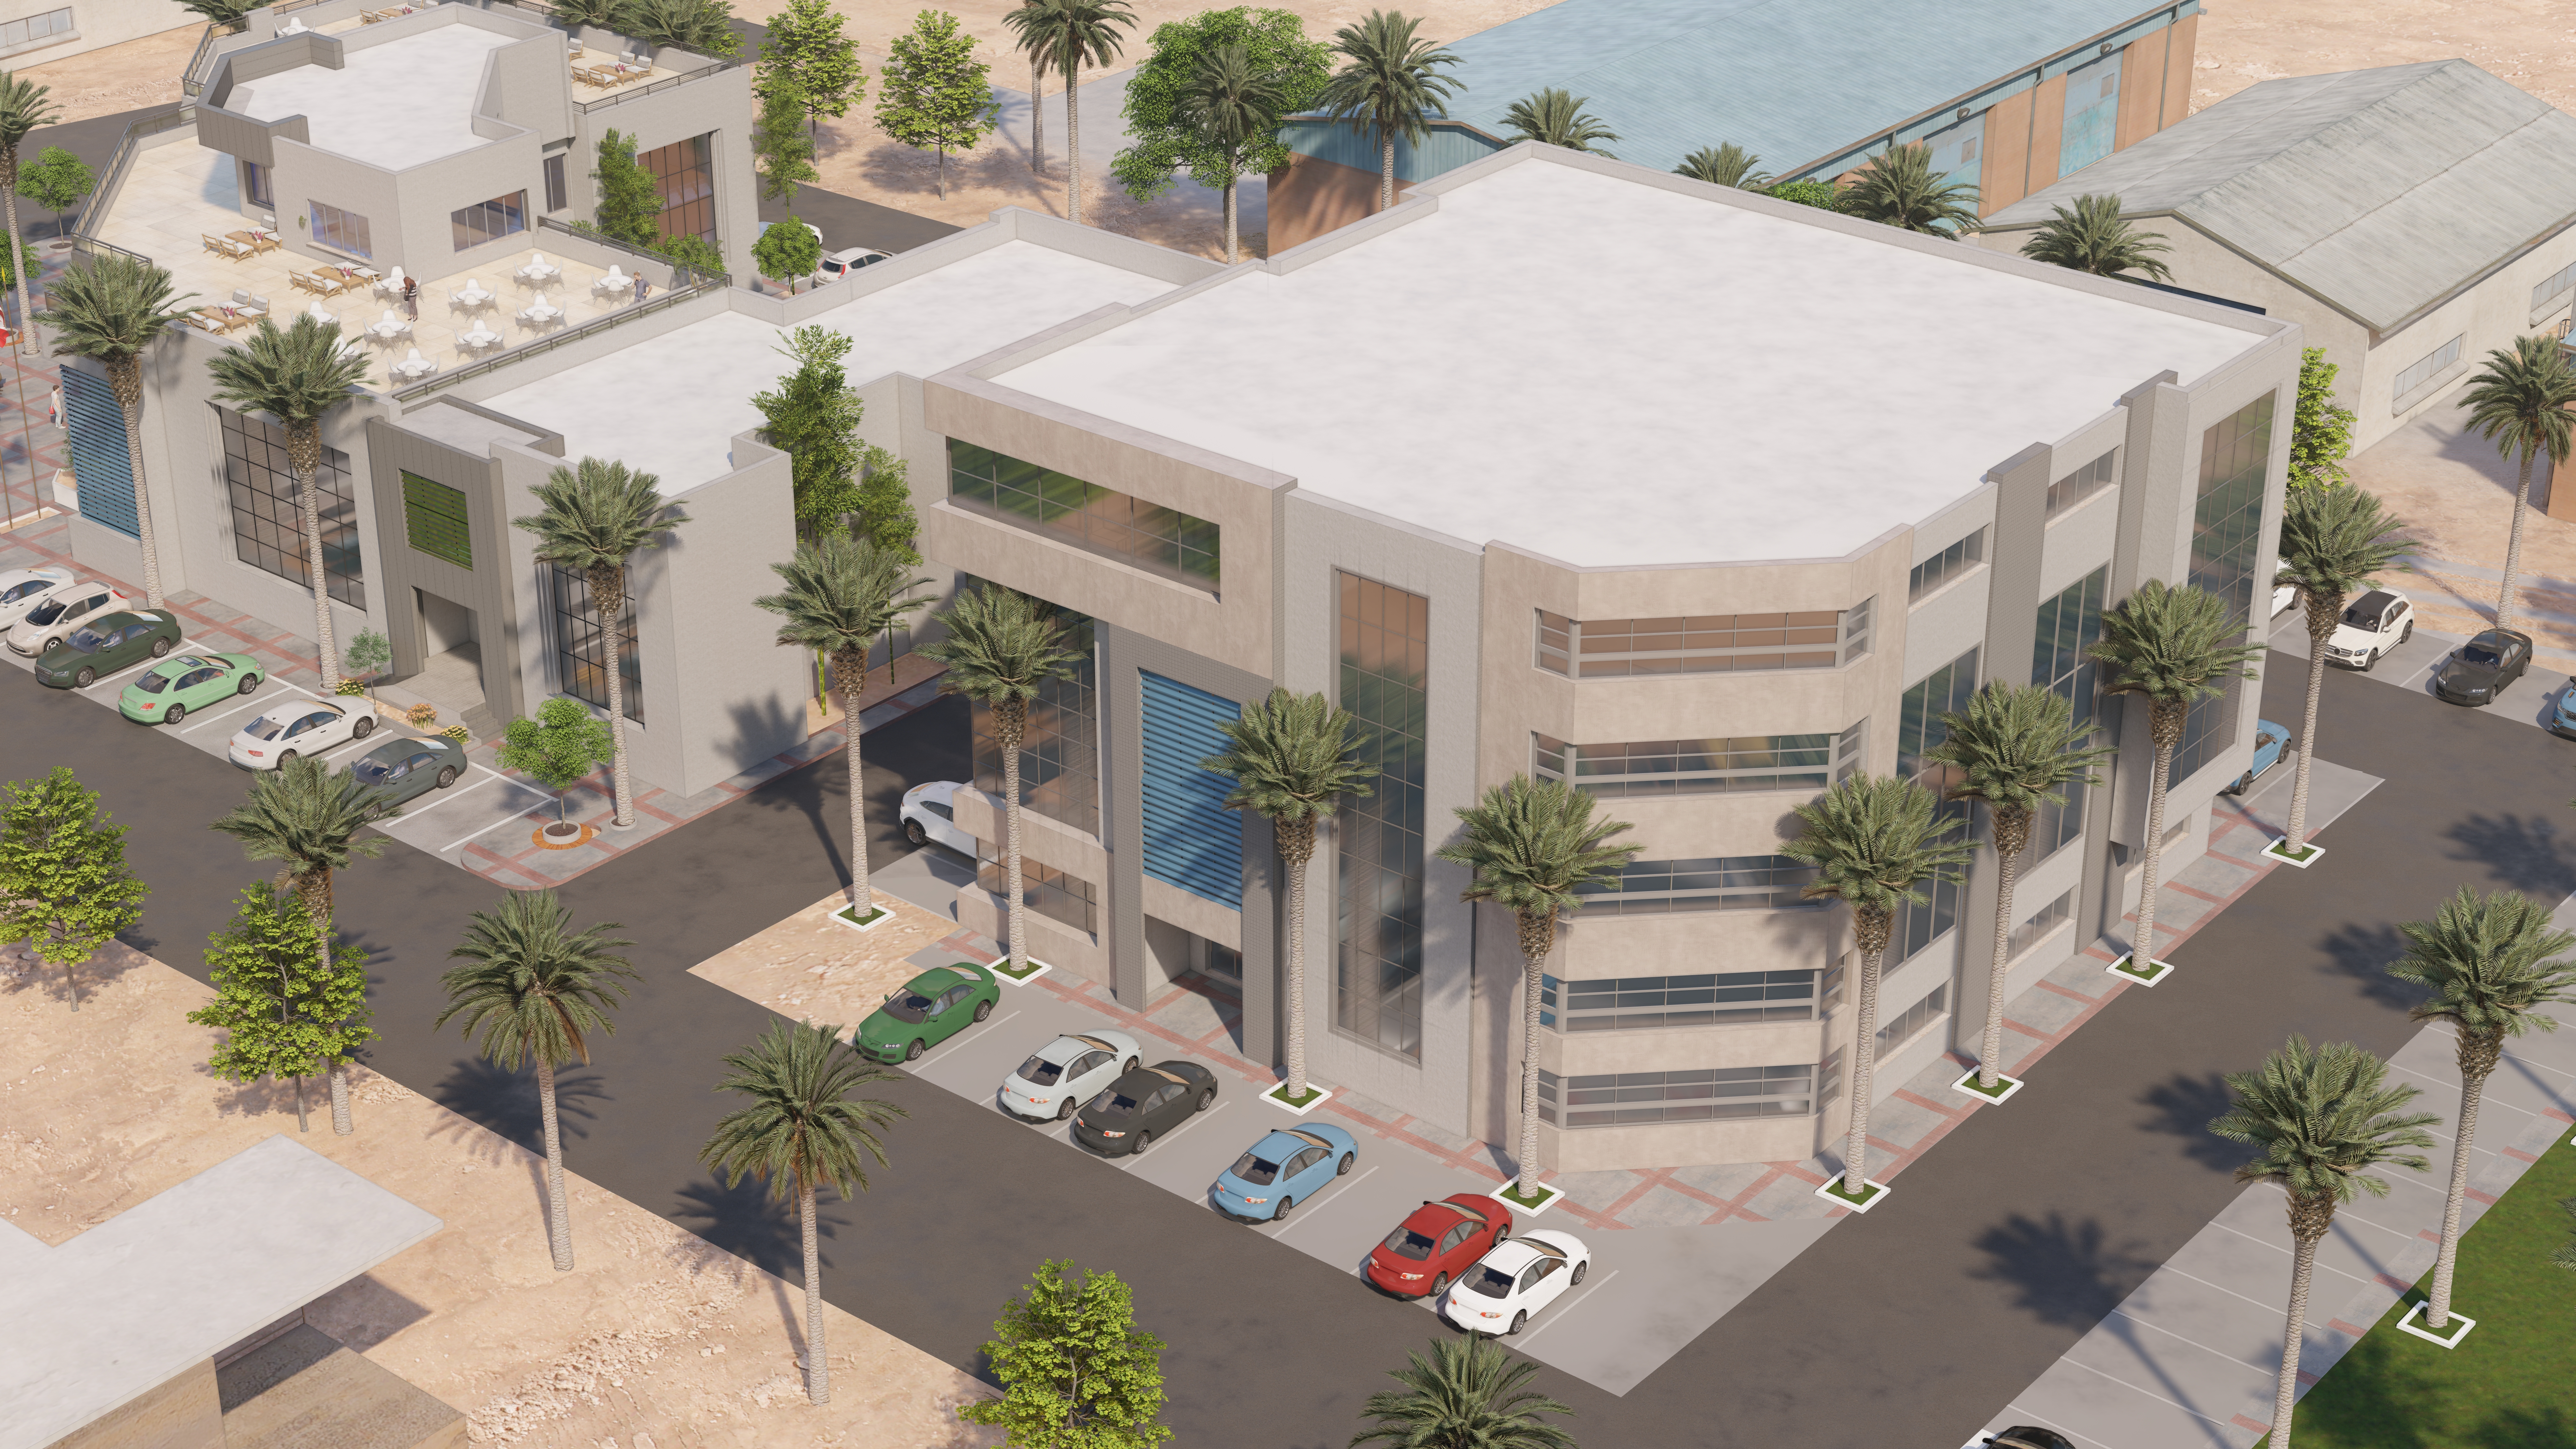 The new communication centre in tunisia